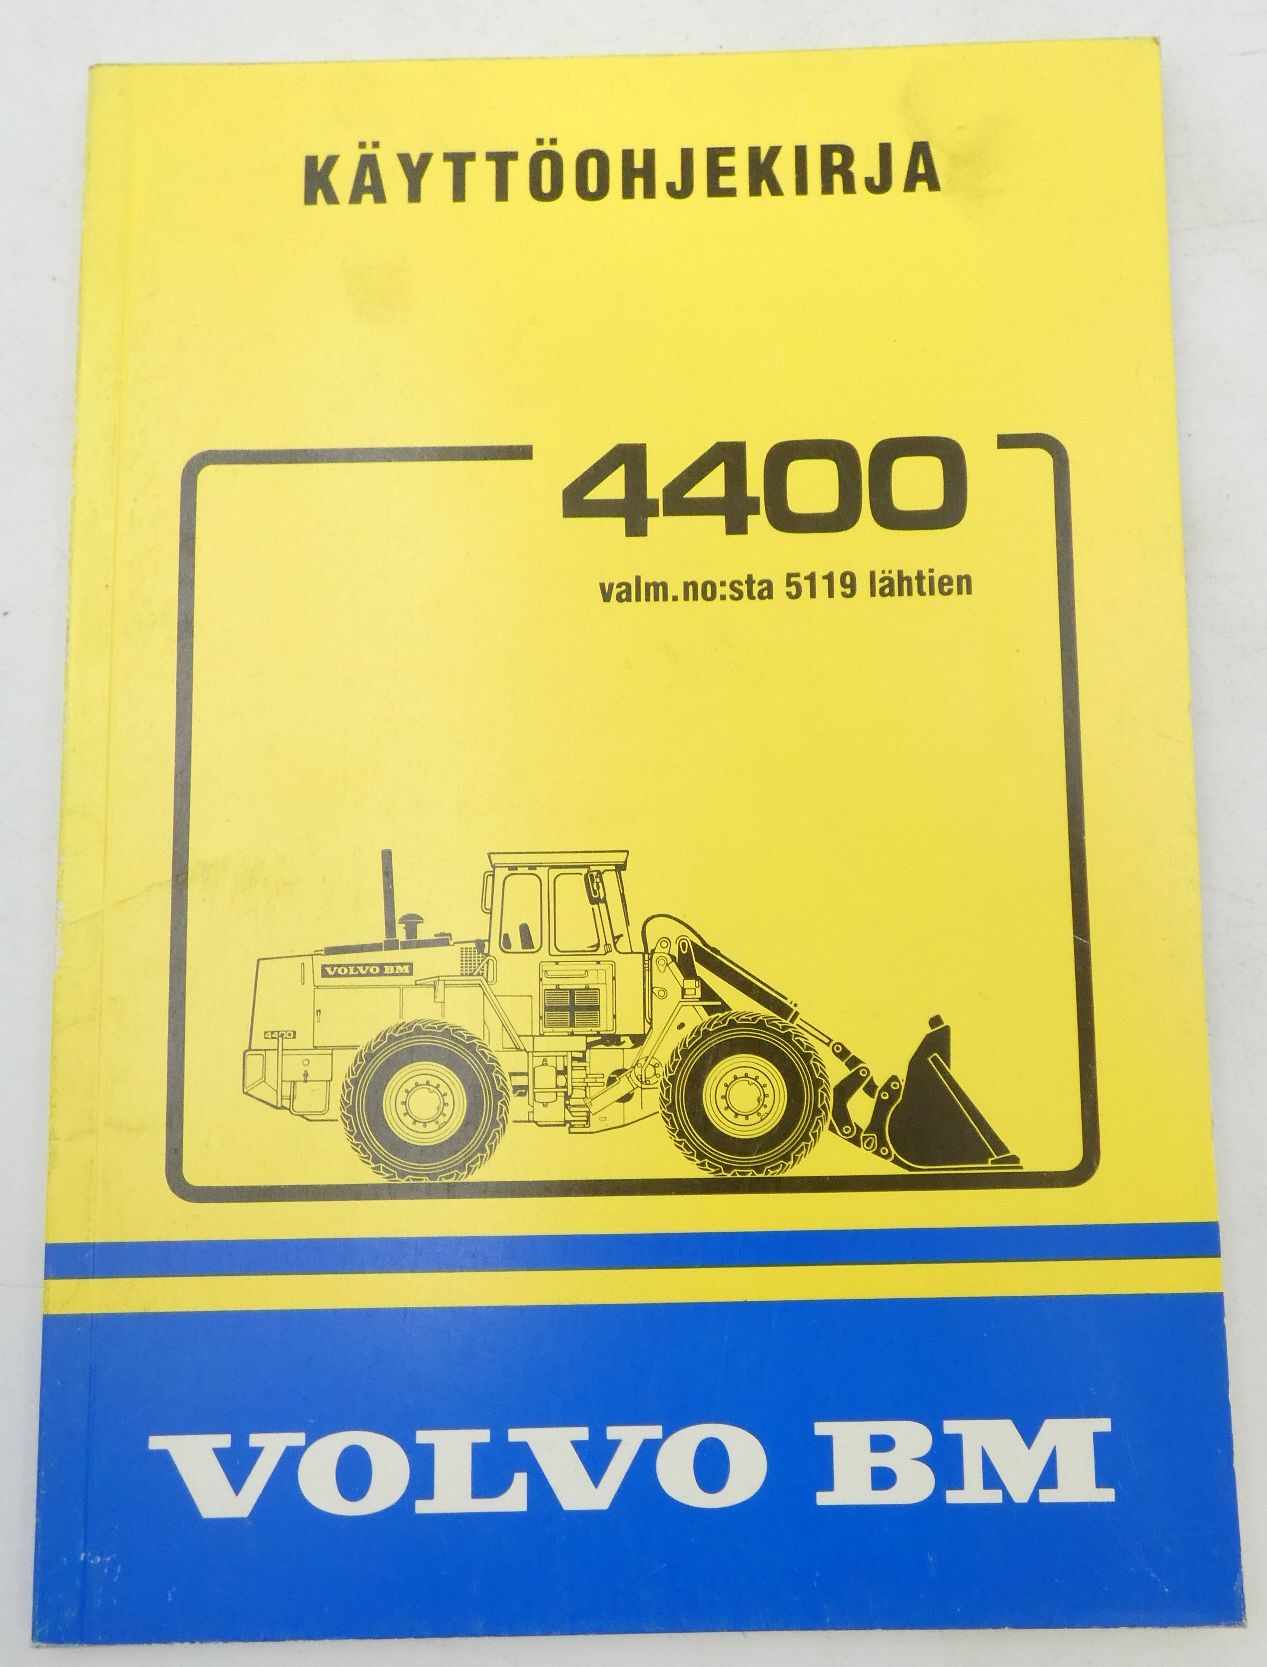 Volvo BM 4400 käyttöohjekirja